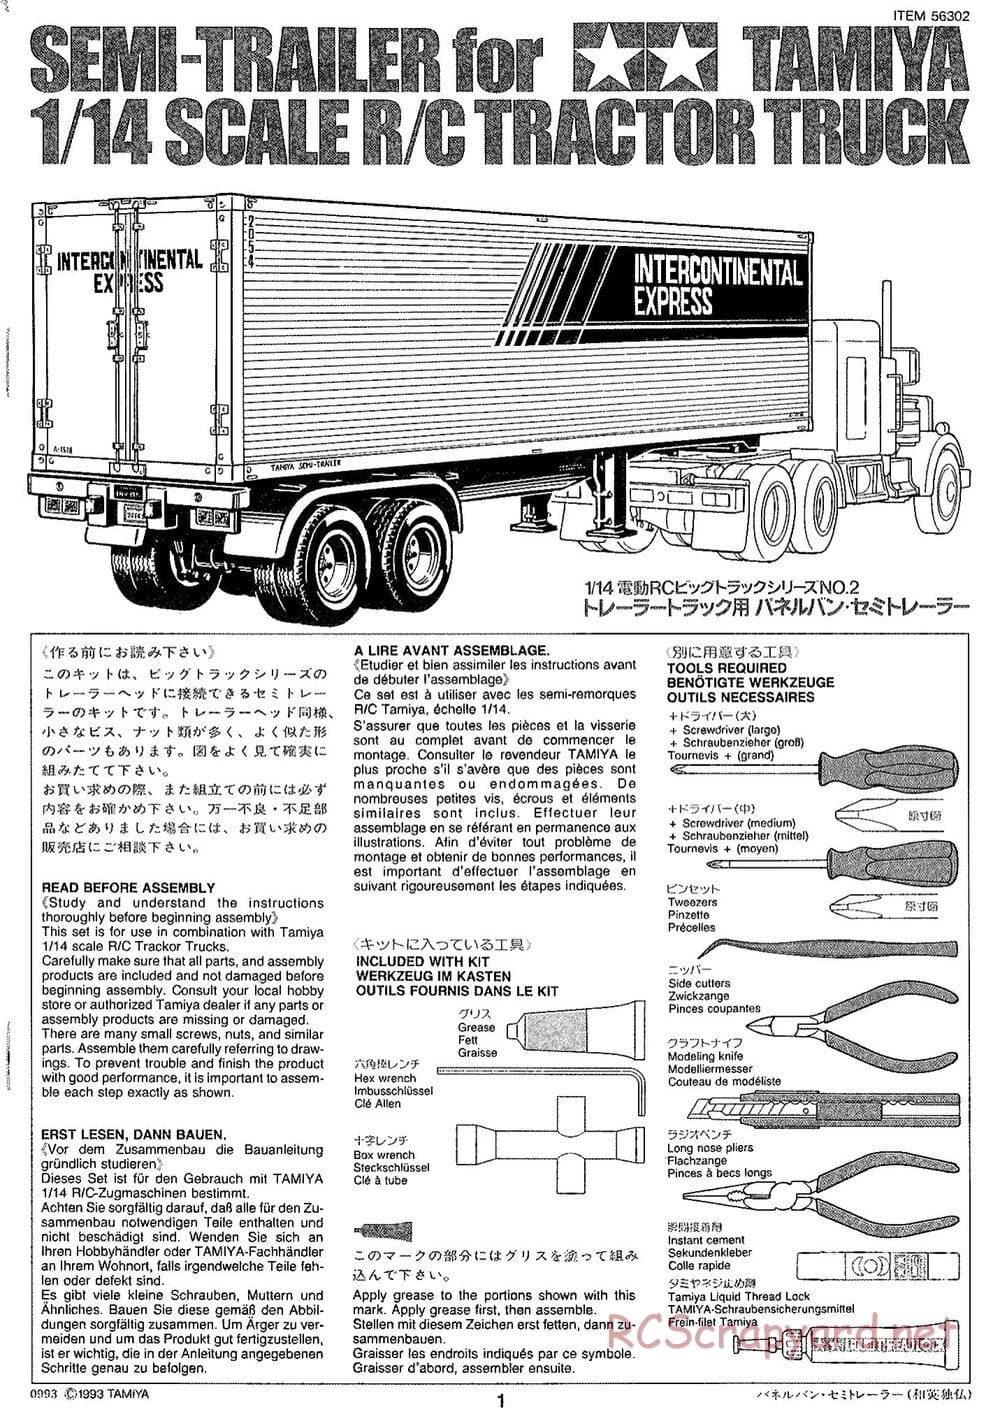 Tamiya - Semi Box Trailer Chassis - Manual - Page 1